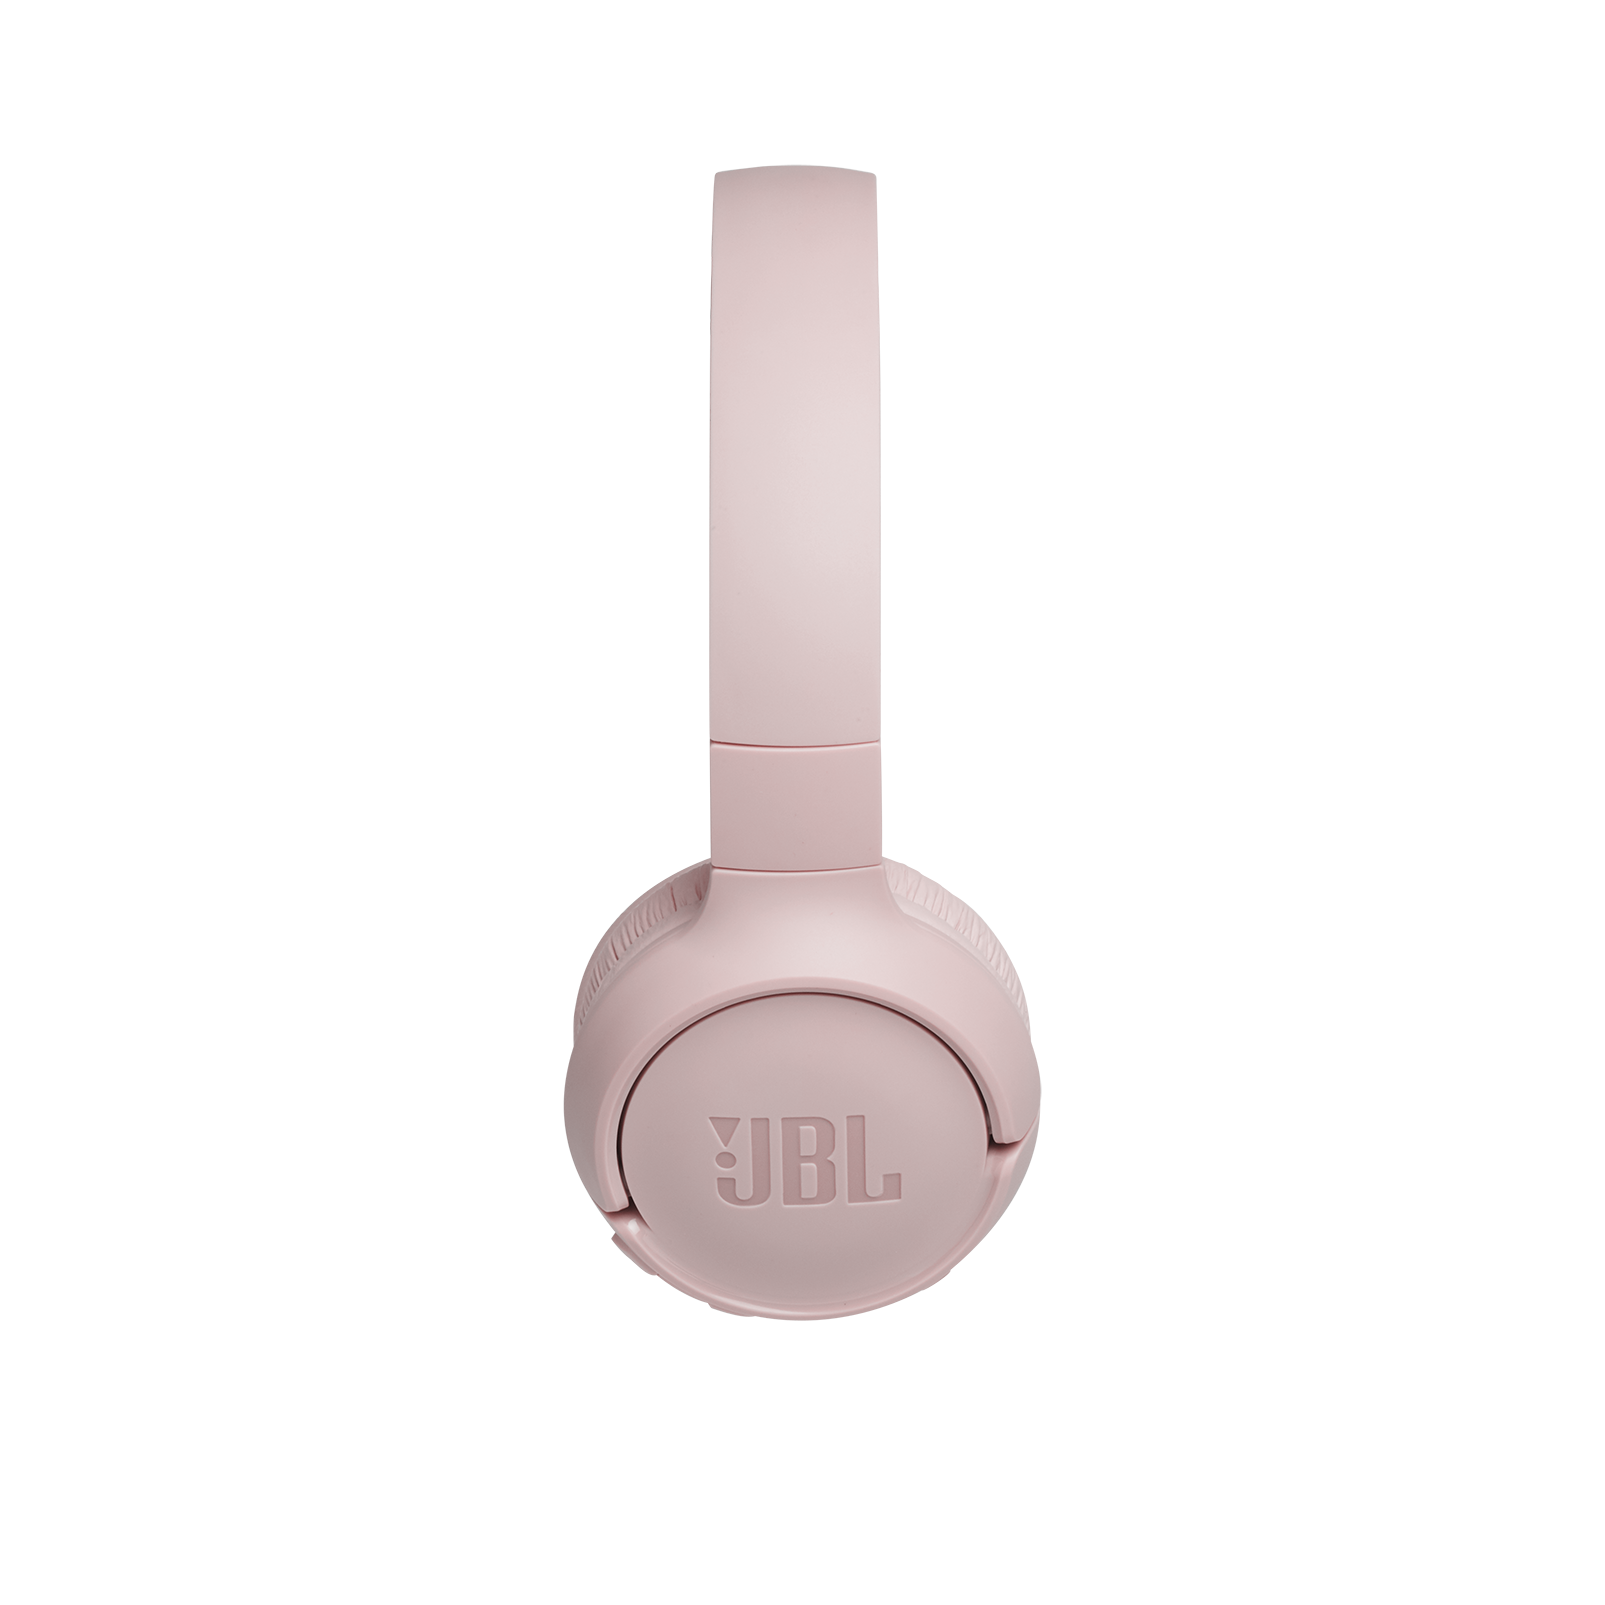 JBL Tune 500BT - Pink - Wireless on-ear headphones - Left